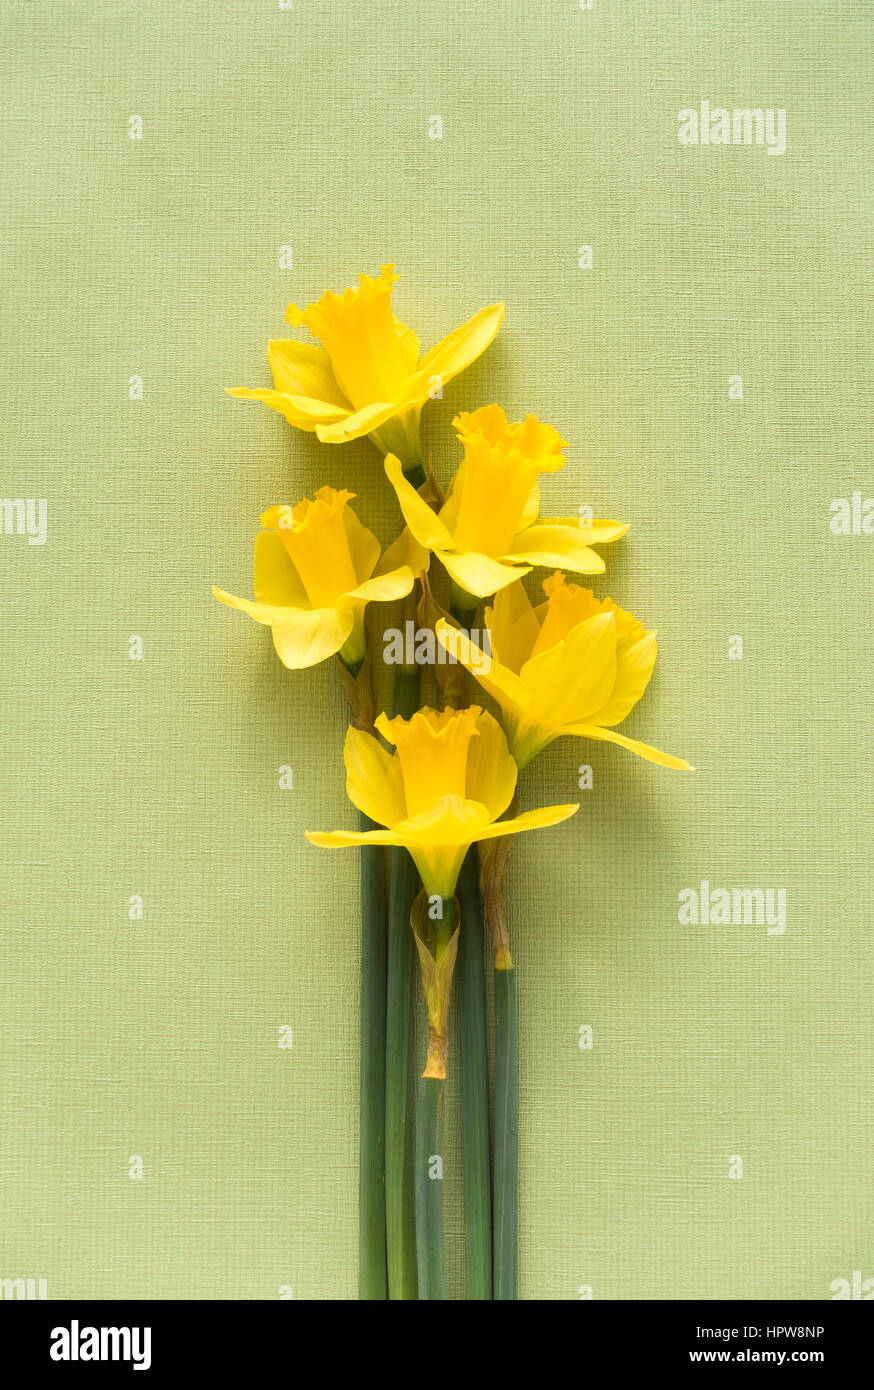 Disposición de cinco jersey amarillo dulce orgullo narcisos acostado en verde pálido suave fondo de textura con copia espacio en la parte superior. Foto de stock